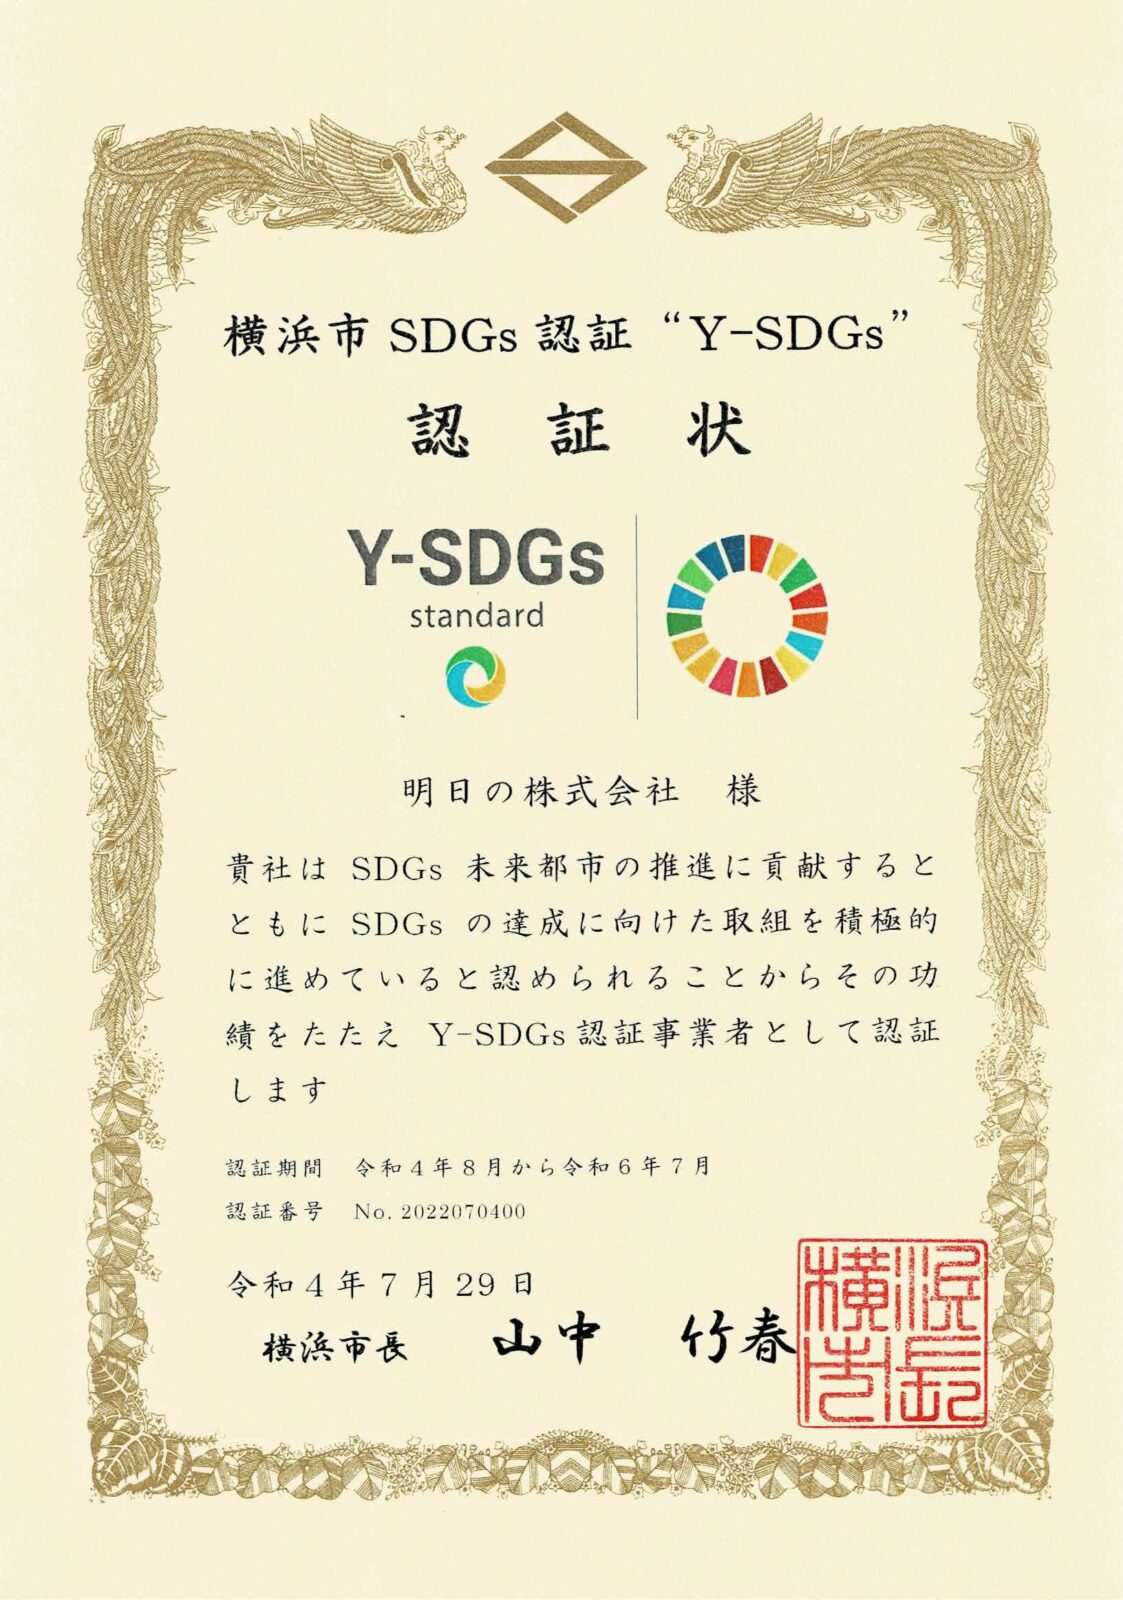 横浜市SDG‘s認証 ”Y-SDGs” standard認証いただきました。